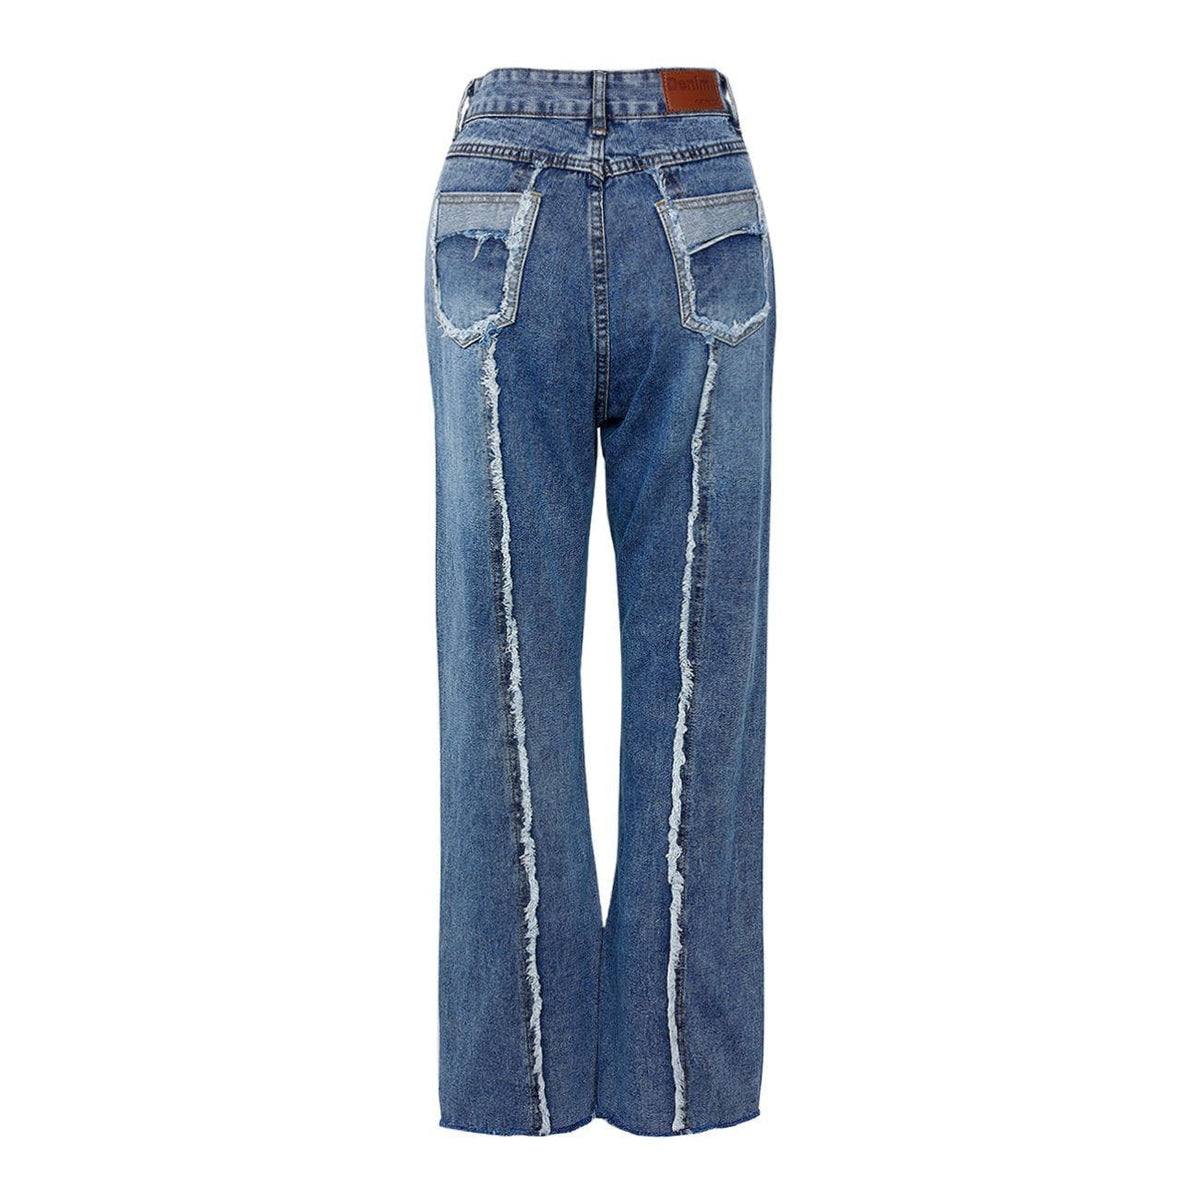 Eprezzy® - Pocket Frayed Jeans Streetwear Fashion - eprezzy.com